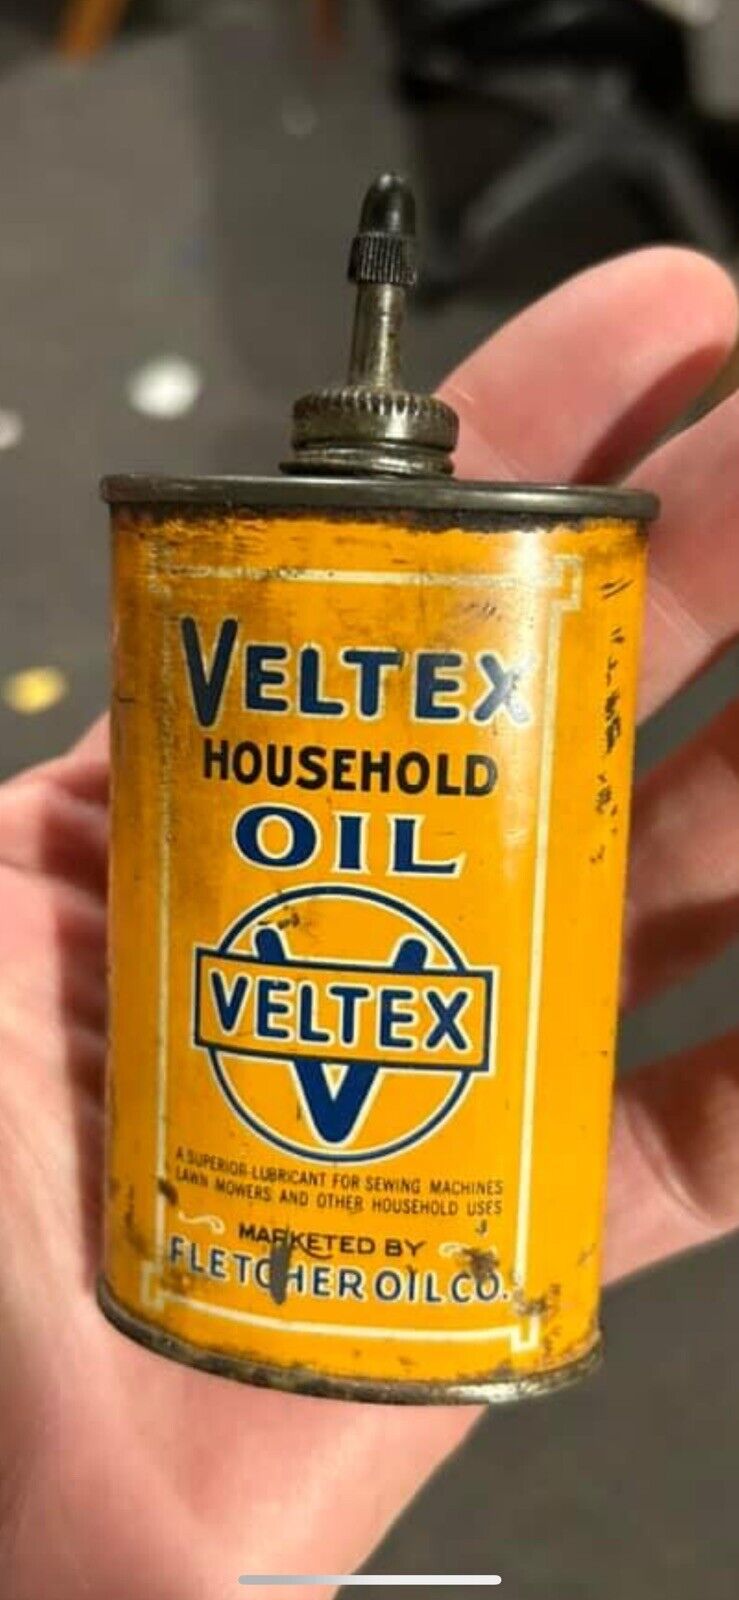 Veltex Rare Household Oiler Fletcher Oil- Vintage Handy Oil Household Tin